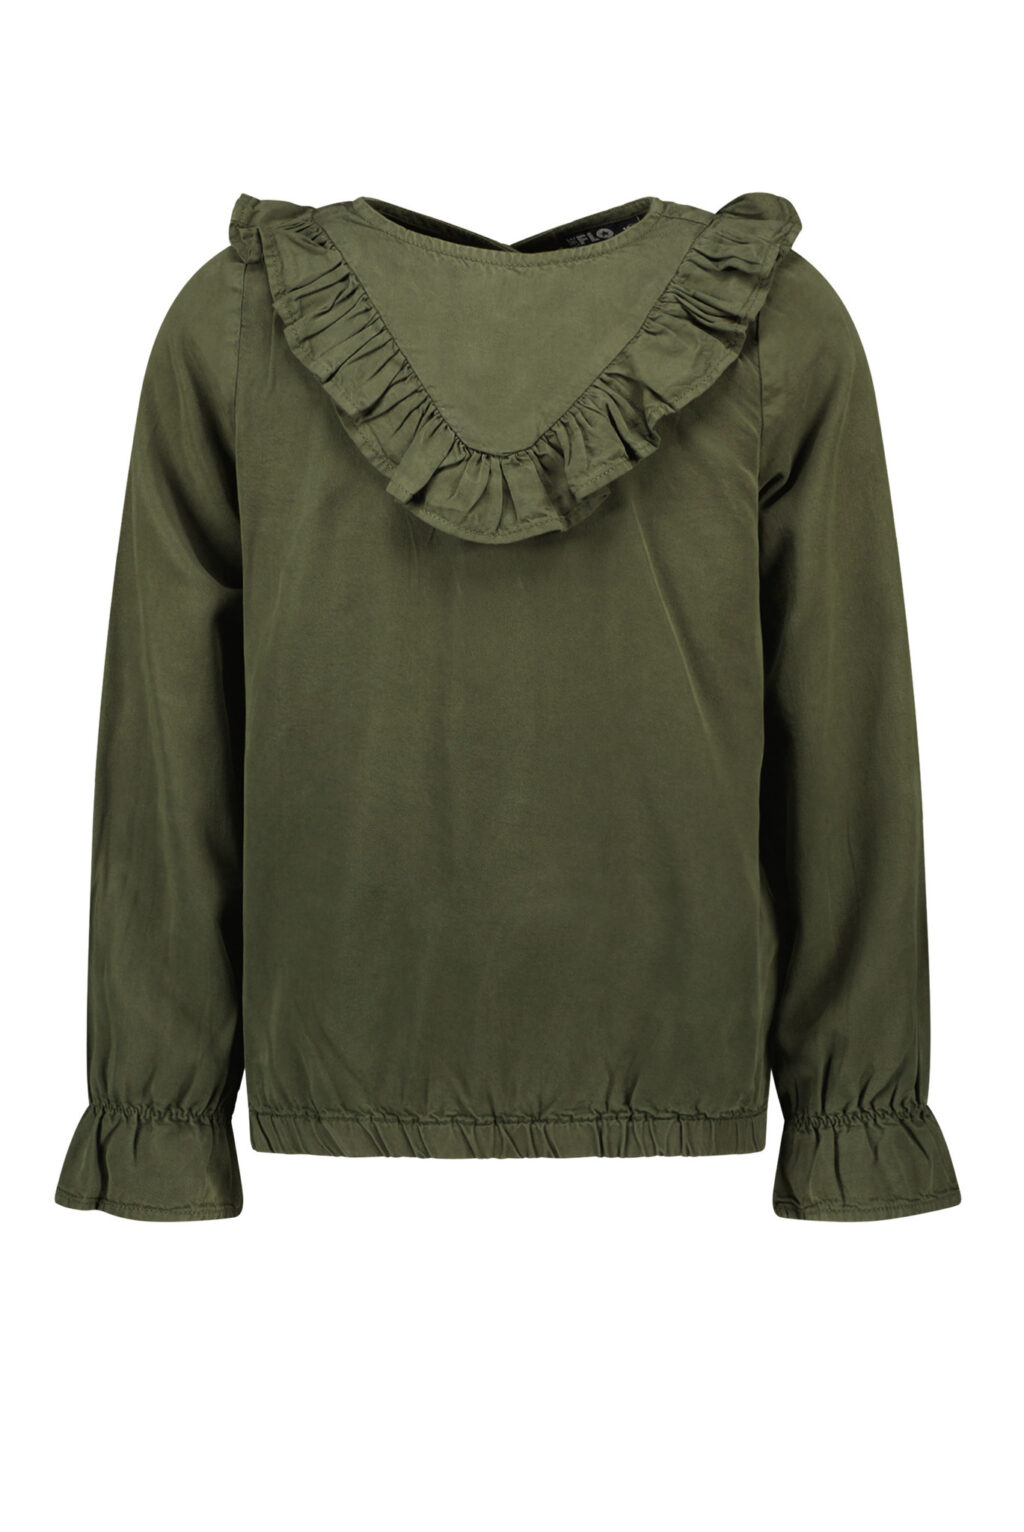 Like Flo Meisjes blouse ruffel - Army ~ Spinze.nl